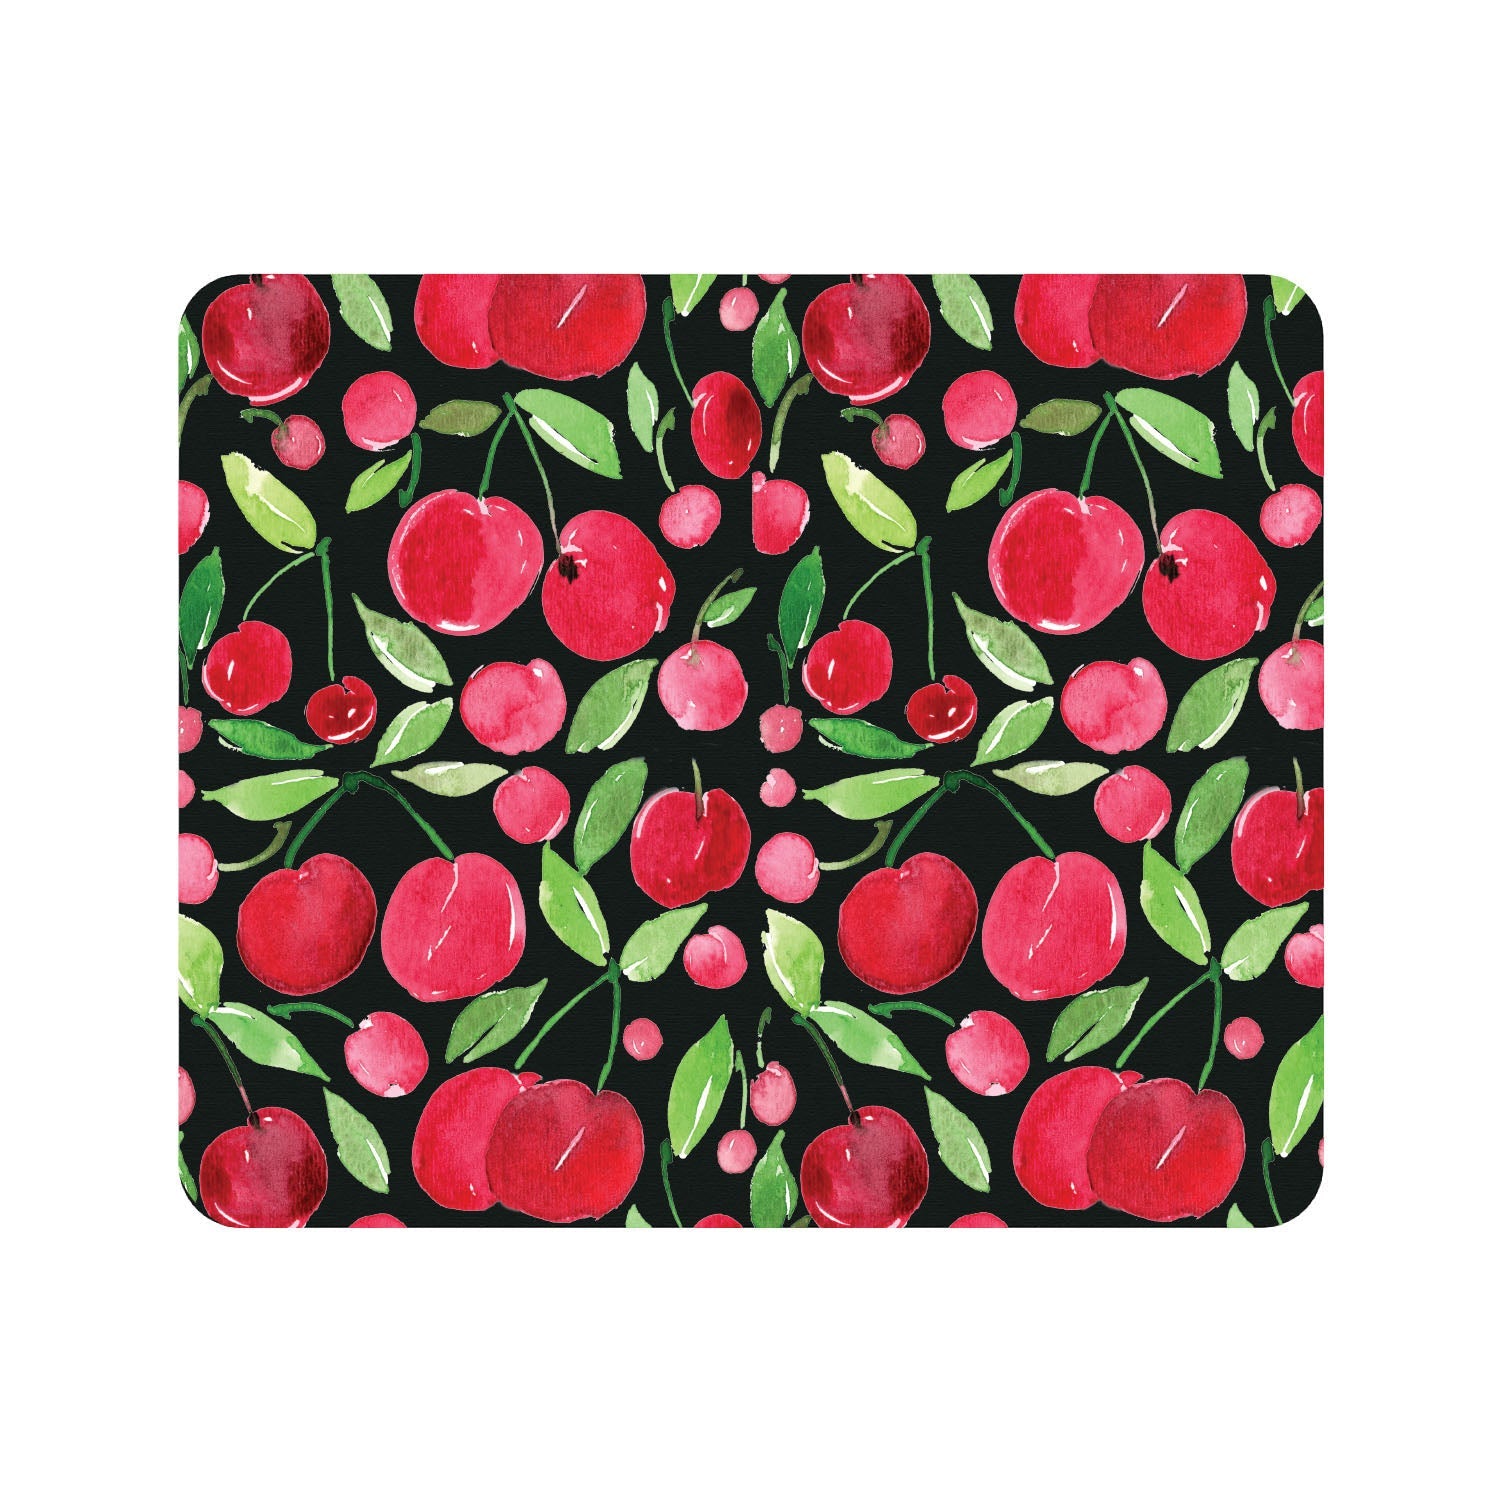 Prints Series Mouse Pad, Sweet Cherries